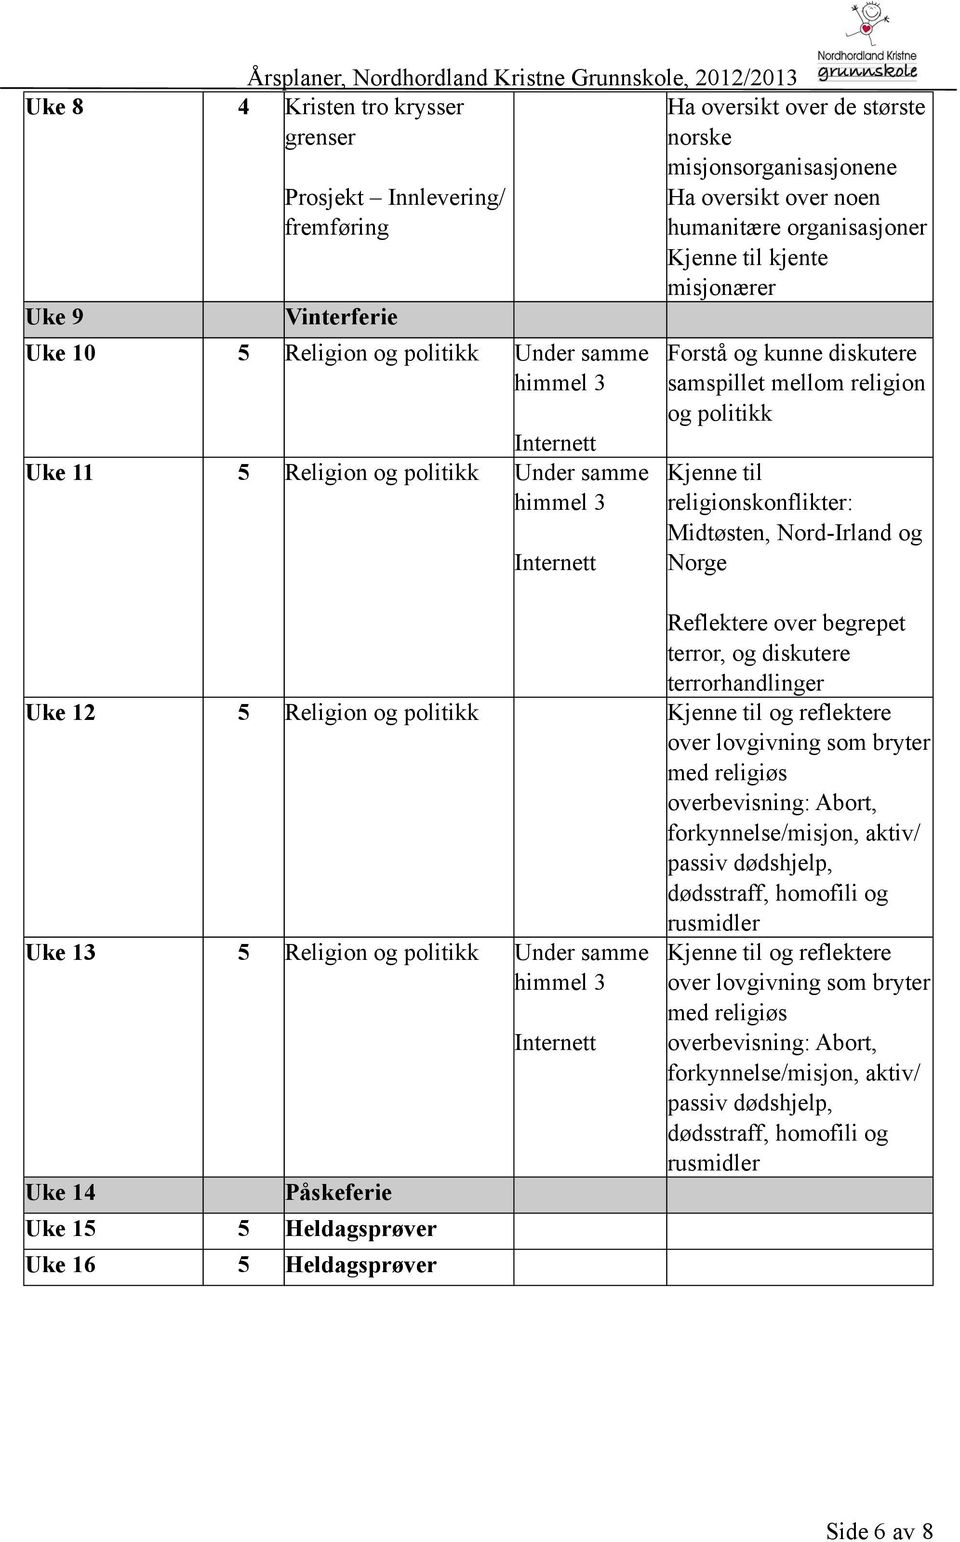 Norge Reflektere over begrepet terror, og diskutere terrorhandlinger Uke 12 5 Religion og politikk Kjenne til og reflektere over lovgivning som bryter med religiøs overbevisning: Abort,